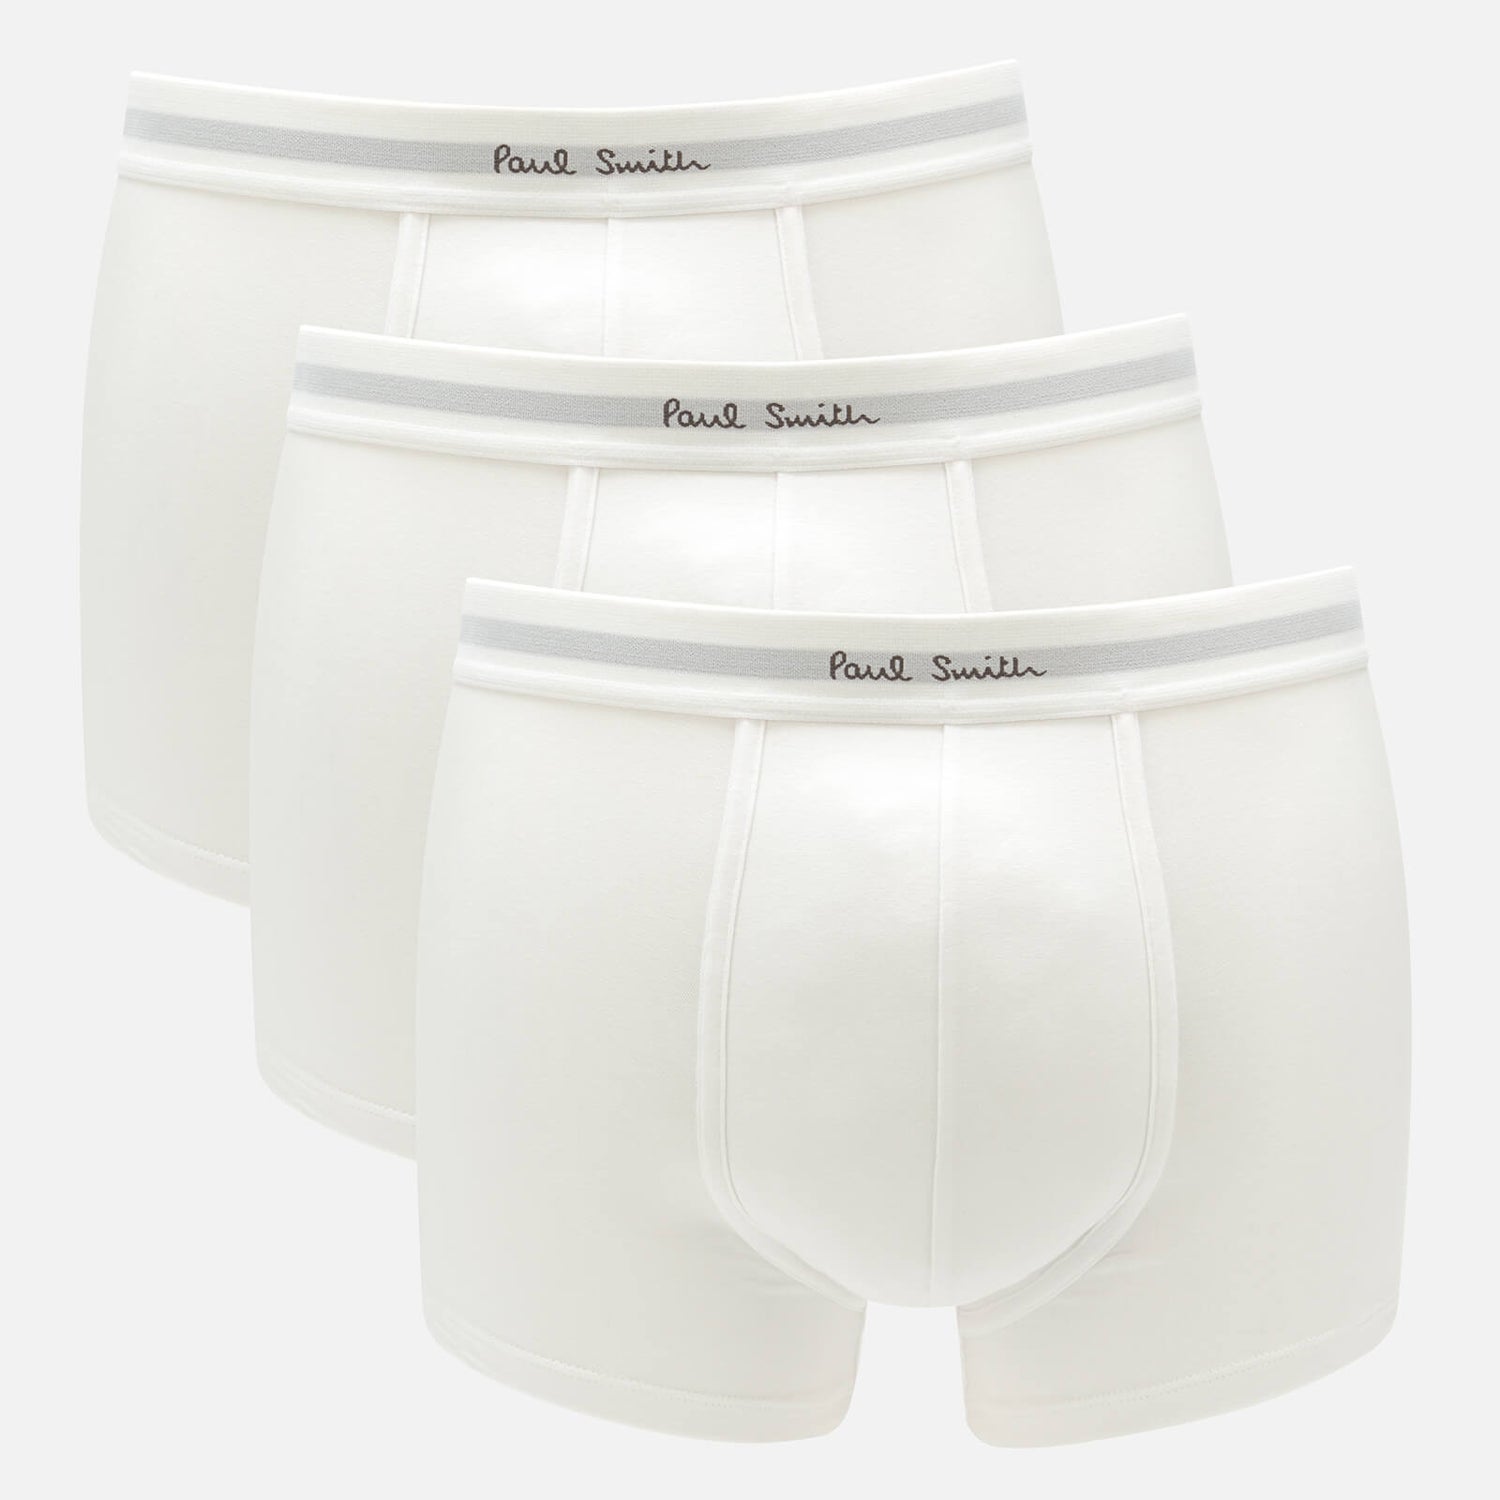 PS Paul Smith Men's 3-Pack Trunks - White - S